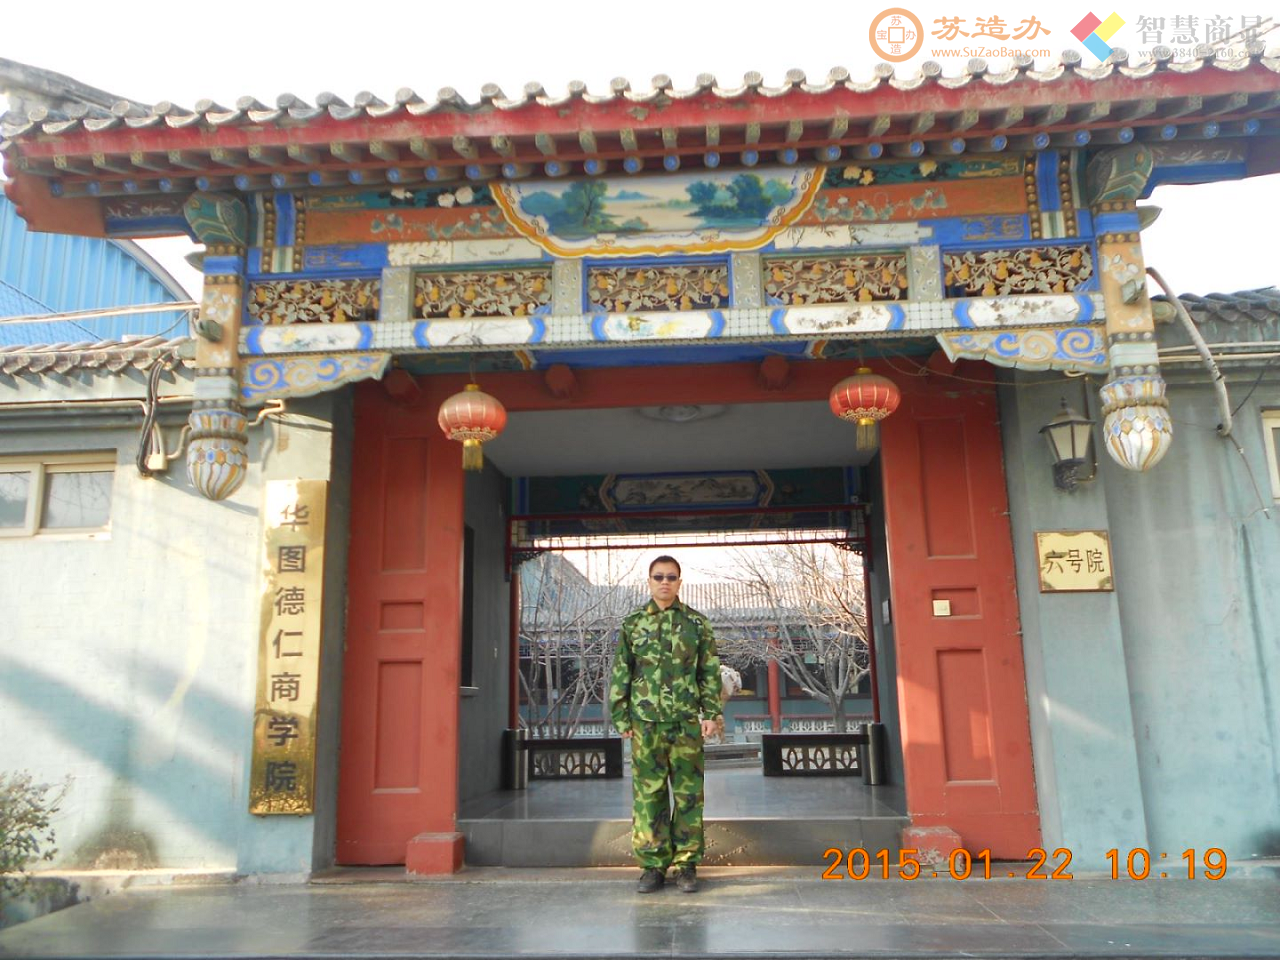 阿苏在北京华图德仁商学院参加校长培训班军训